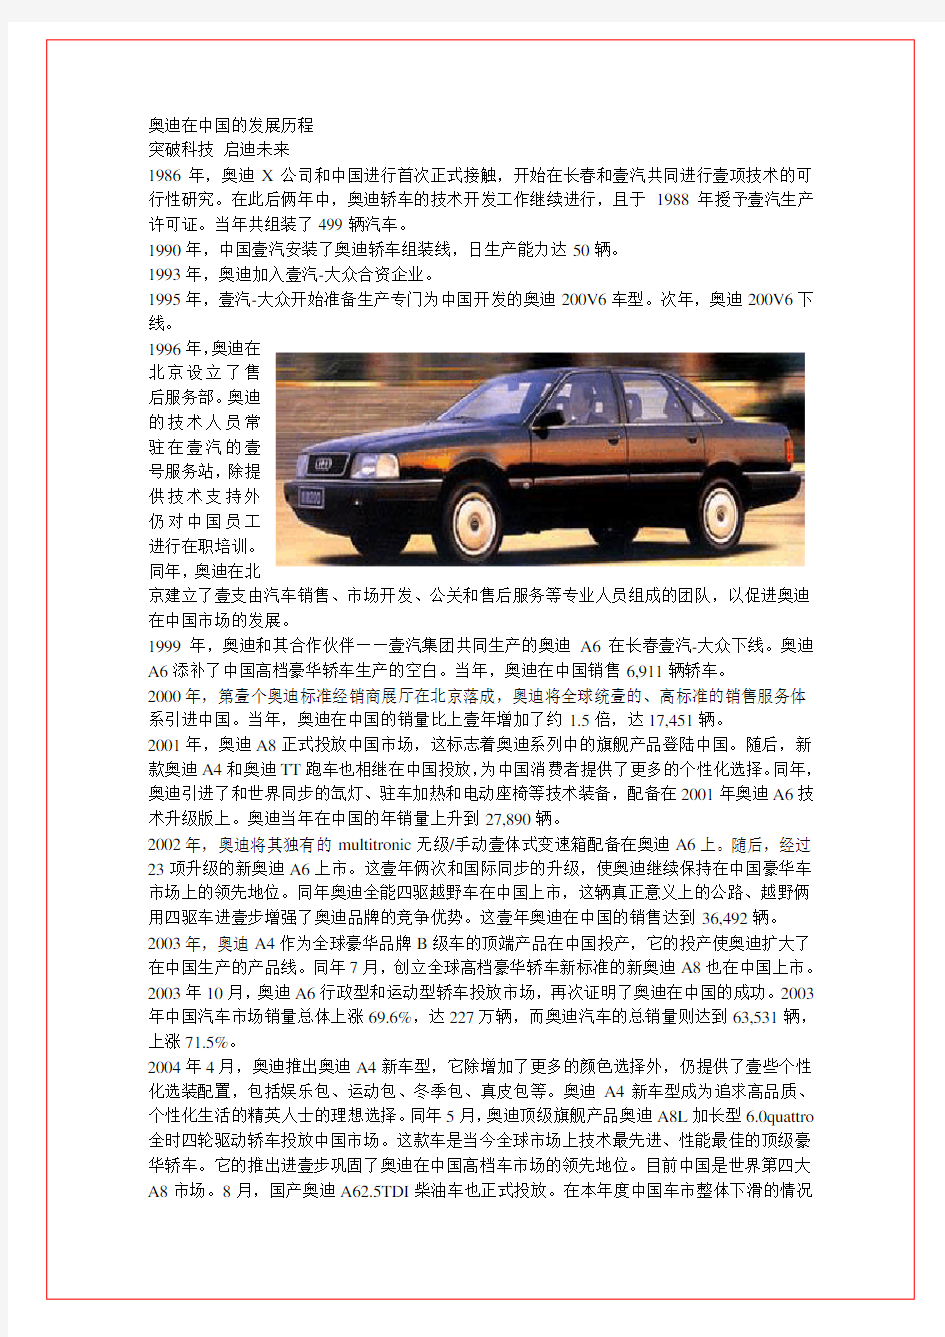 (汽车行业)奥迪在中国的发展历程